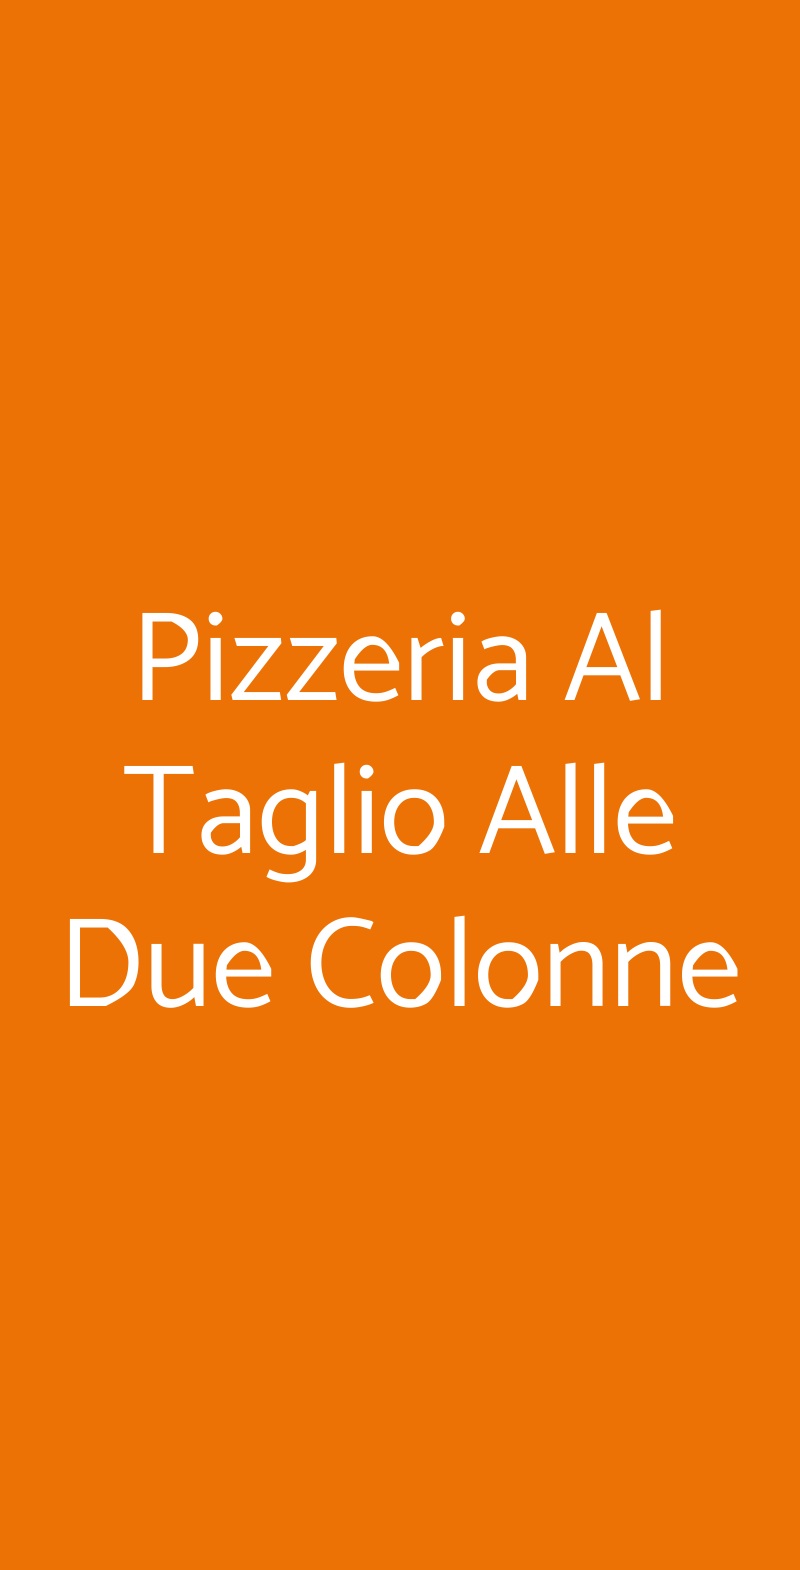 Pizzeria Al Taglio Alle Due Colonne Verona menù 1 pagina